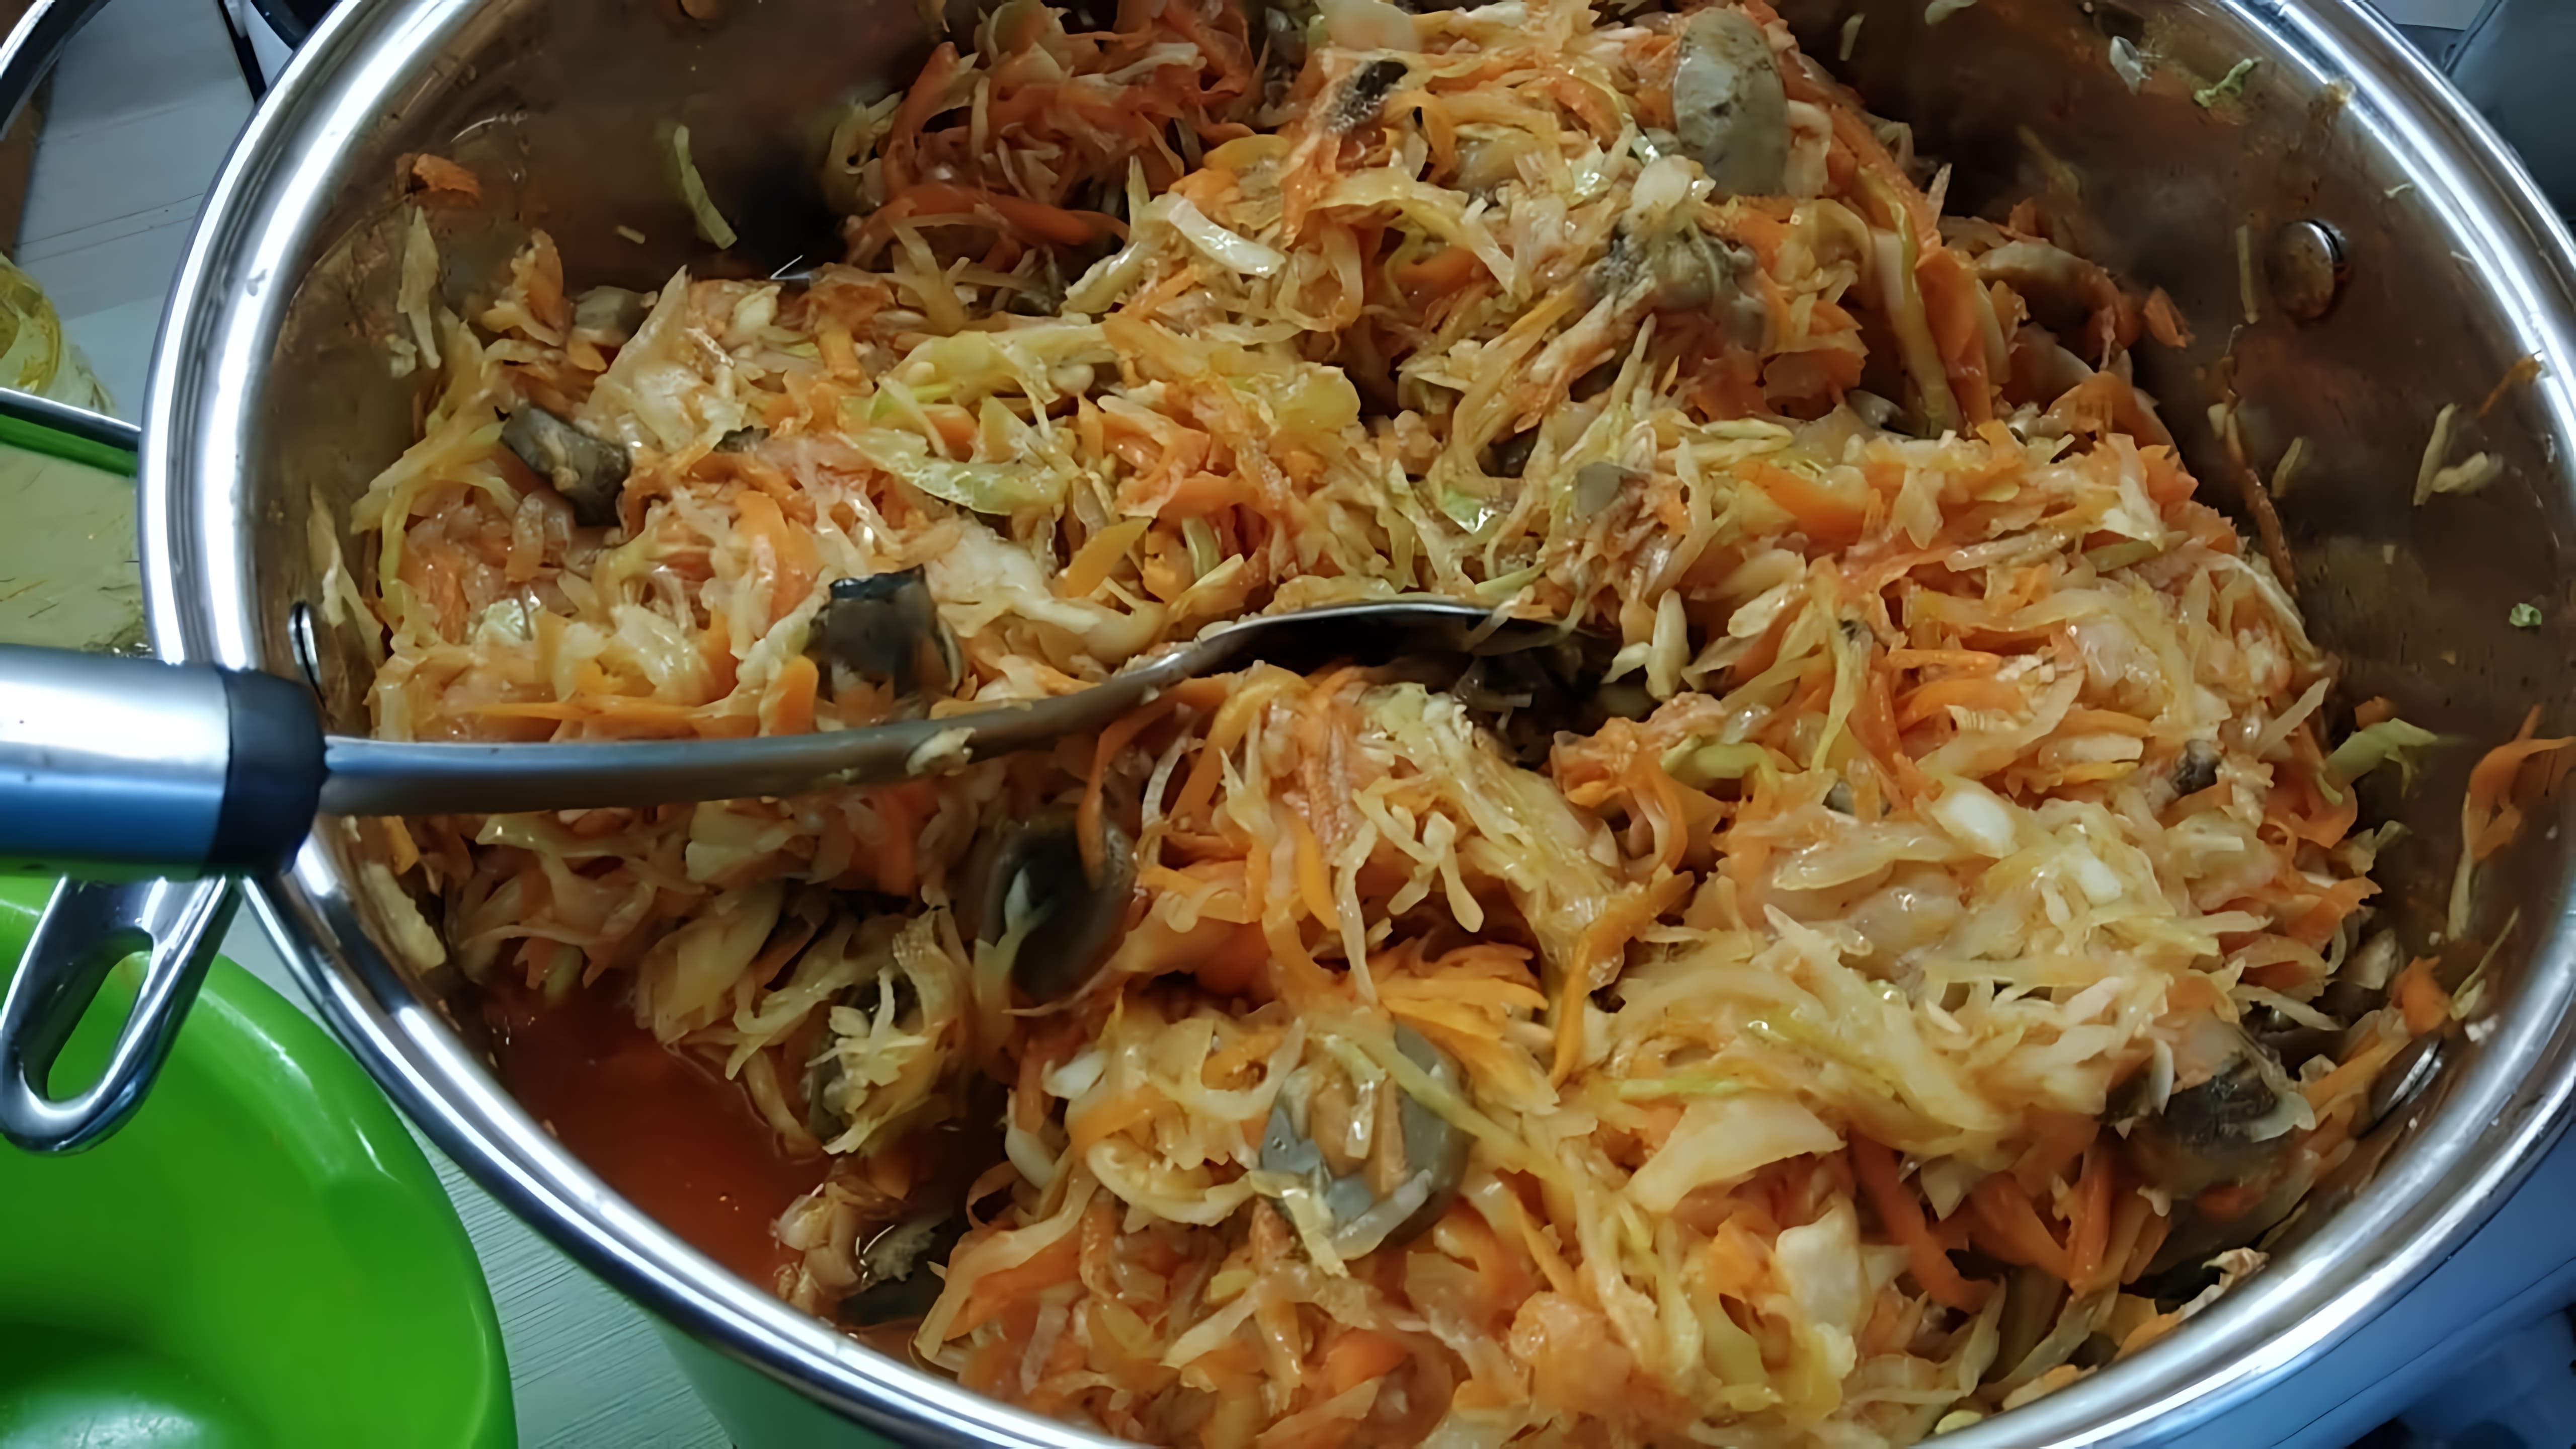 Видео рецепт приготовления солянки - русского рагу с капустой и грибами